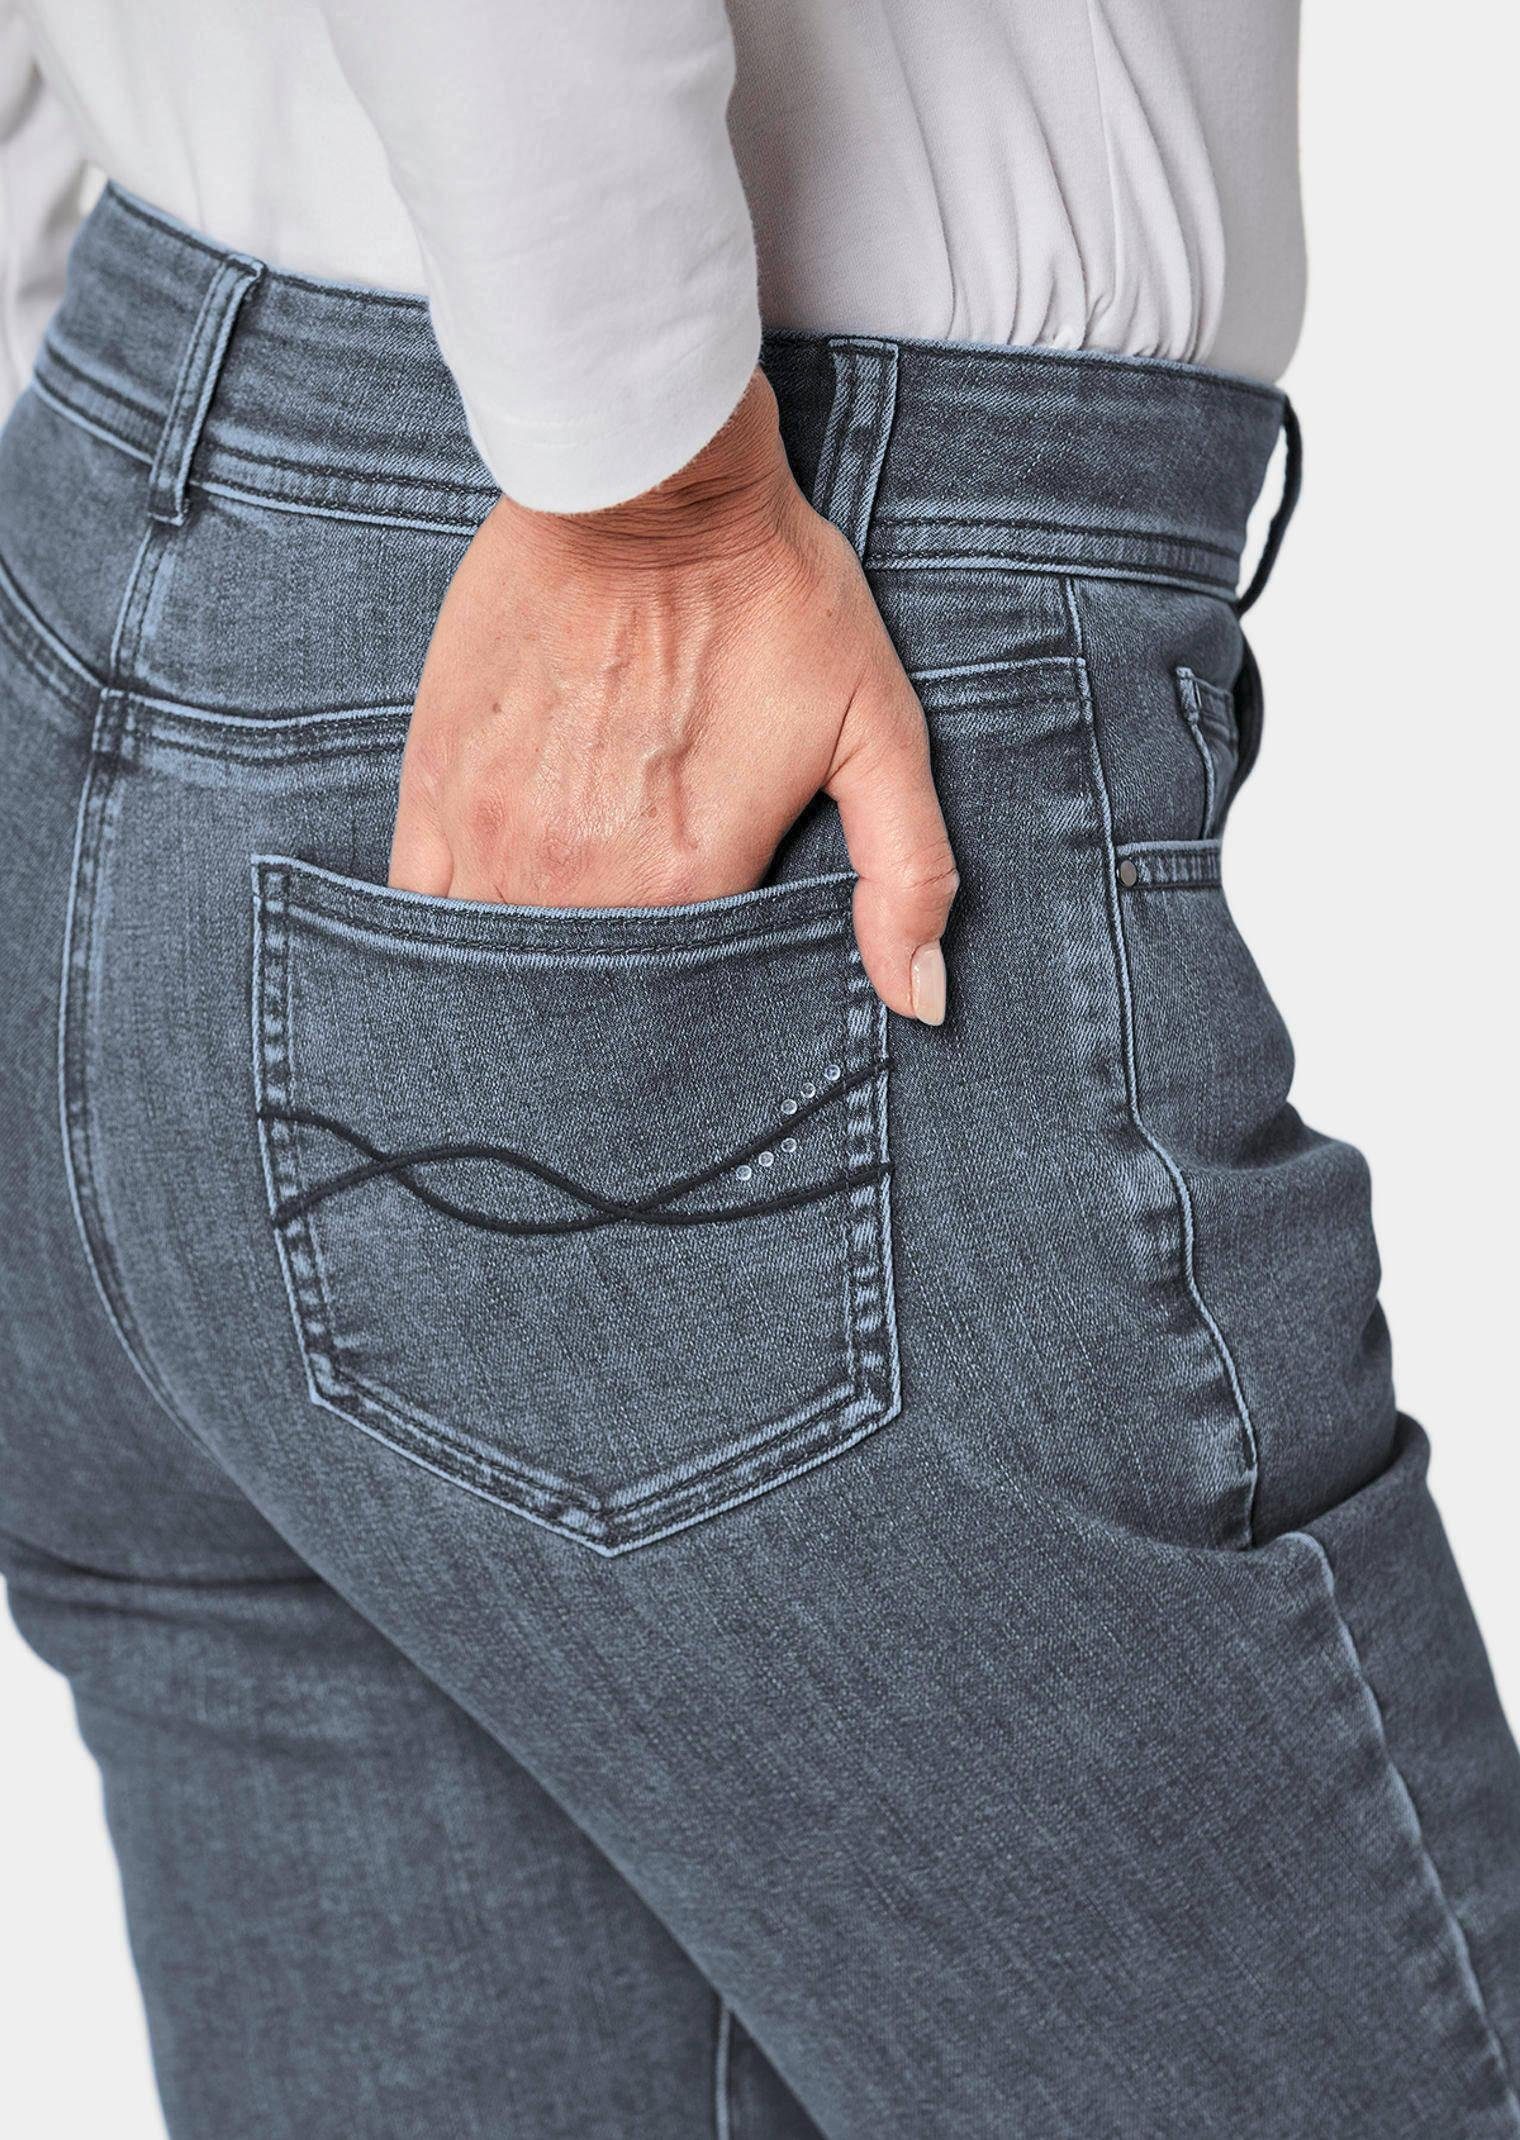 Hose Kurzgröße: grau Superbequeme Bauchweg-Effekt GOLDNER Jeans mit Bequeme